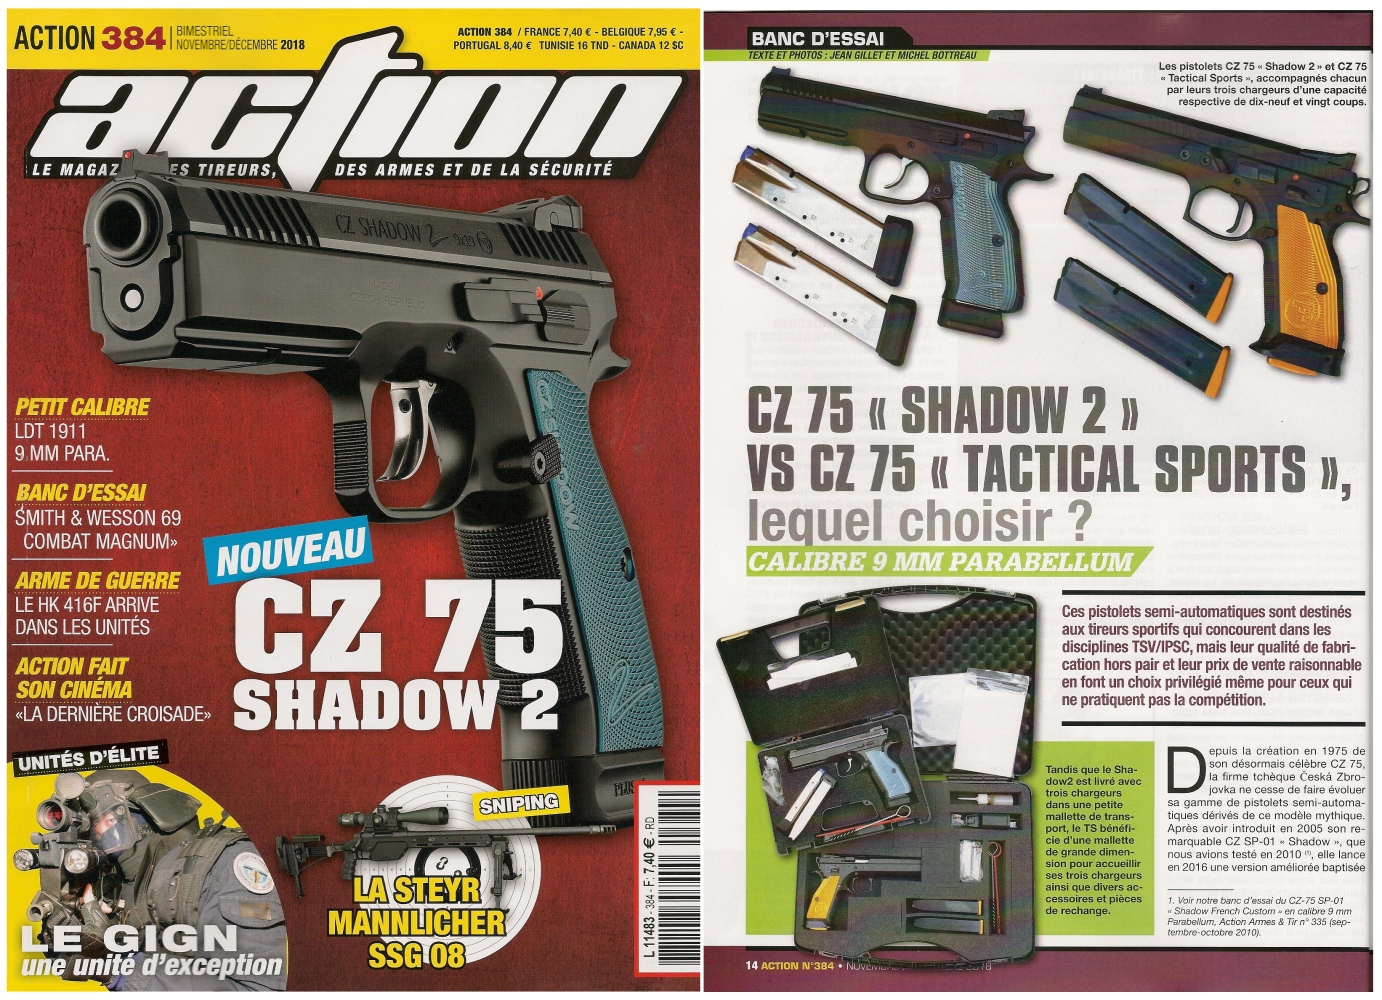 Le banc d’essai des pistolets CZ 75 Shadow 2 et CZ 75 TS a été publié sur 7 pages dans le n°384 (novembre/décembre 2018) du magazine Action.